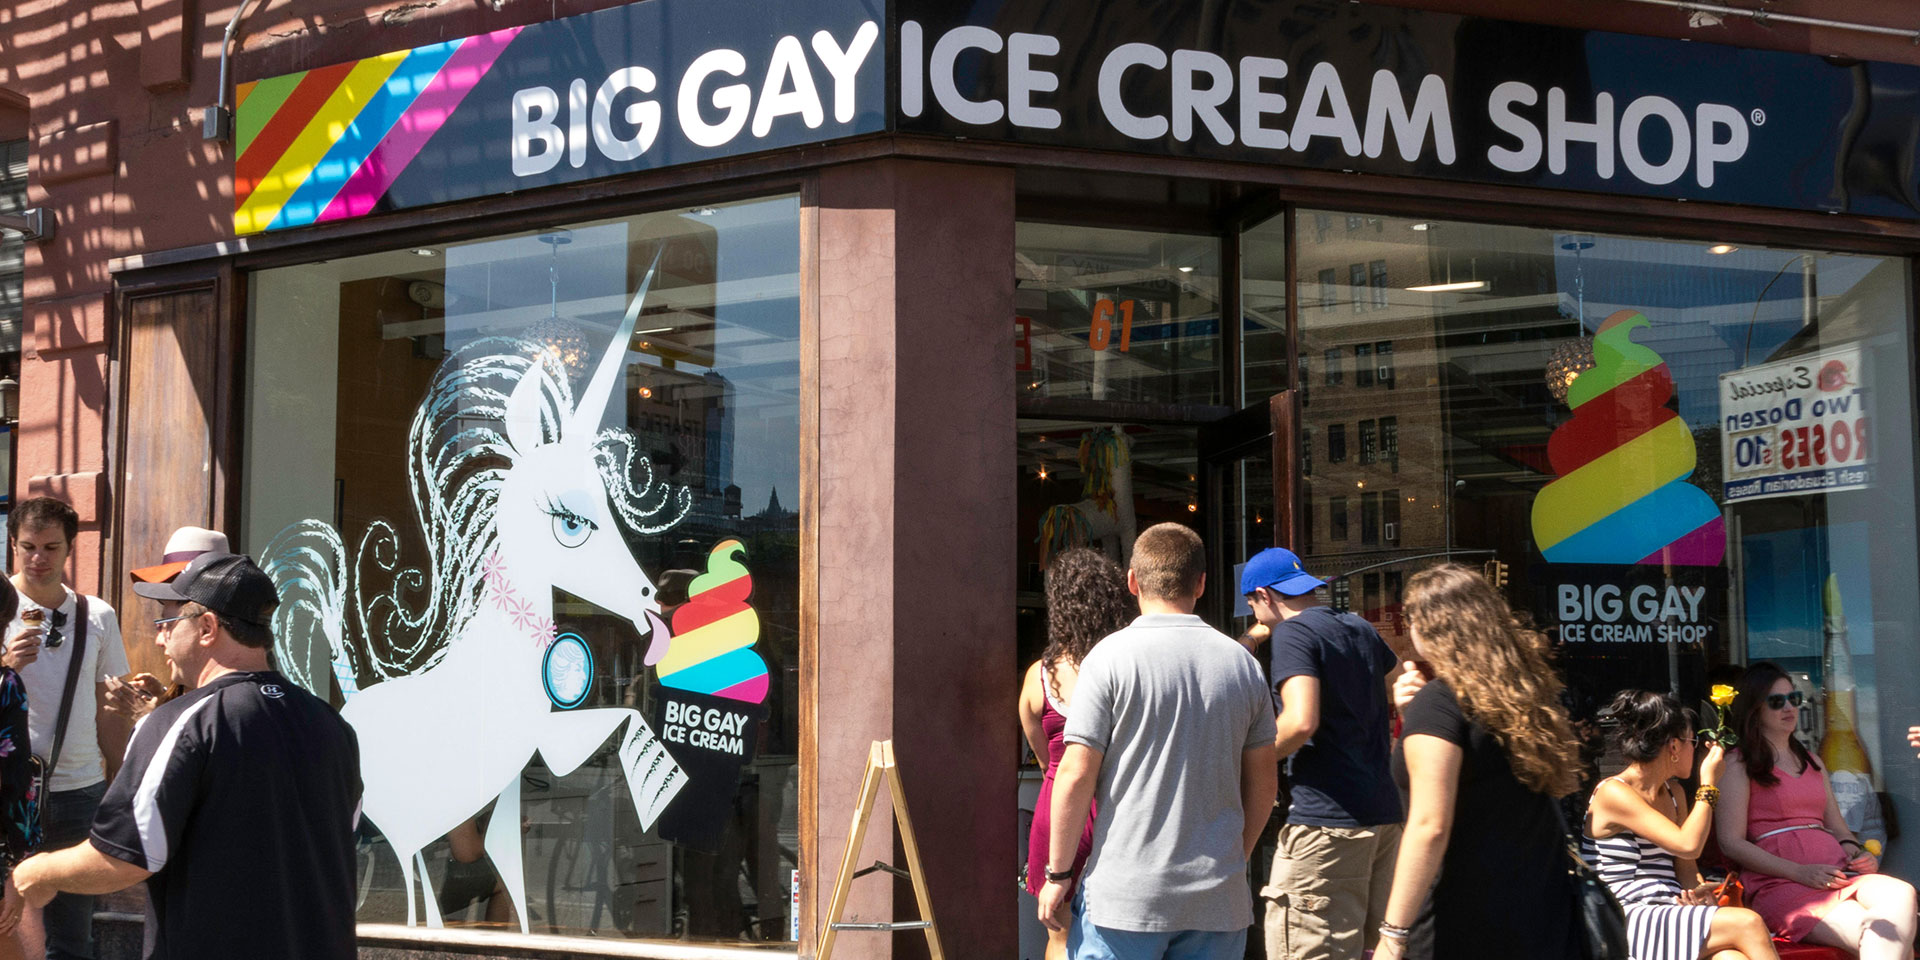 nyc gay pride 2015 date